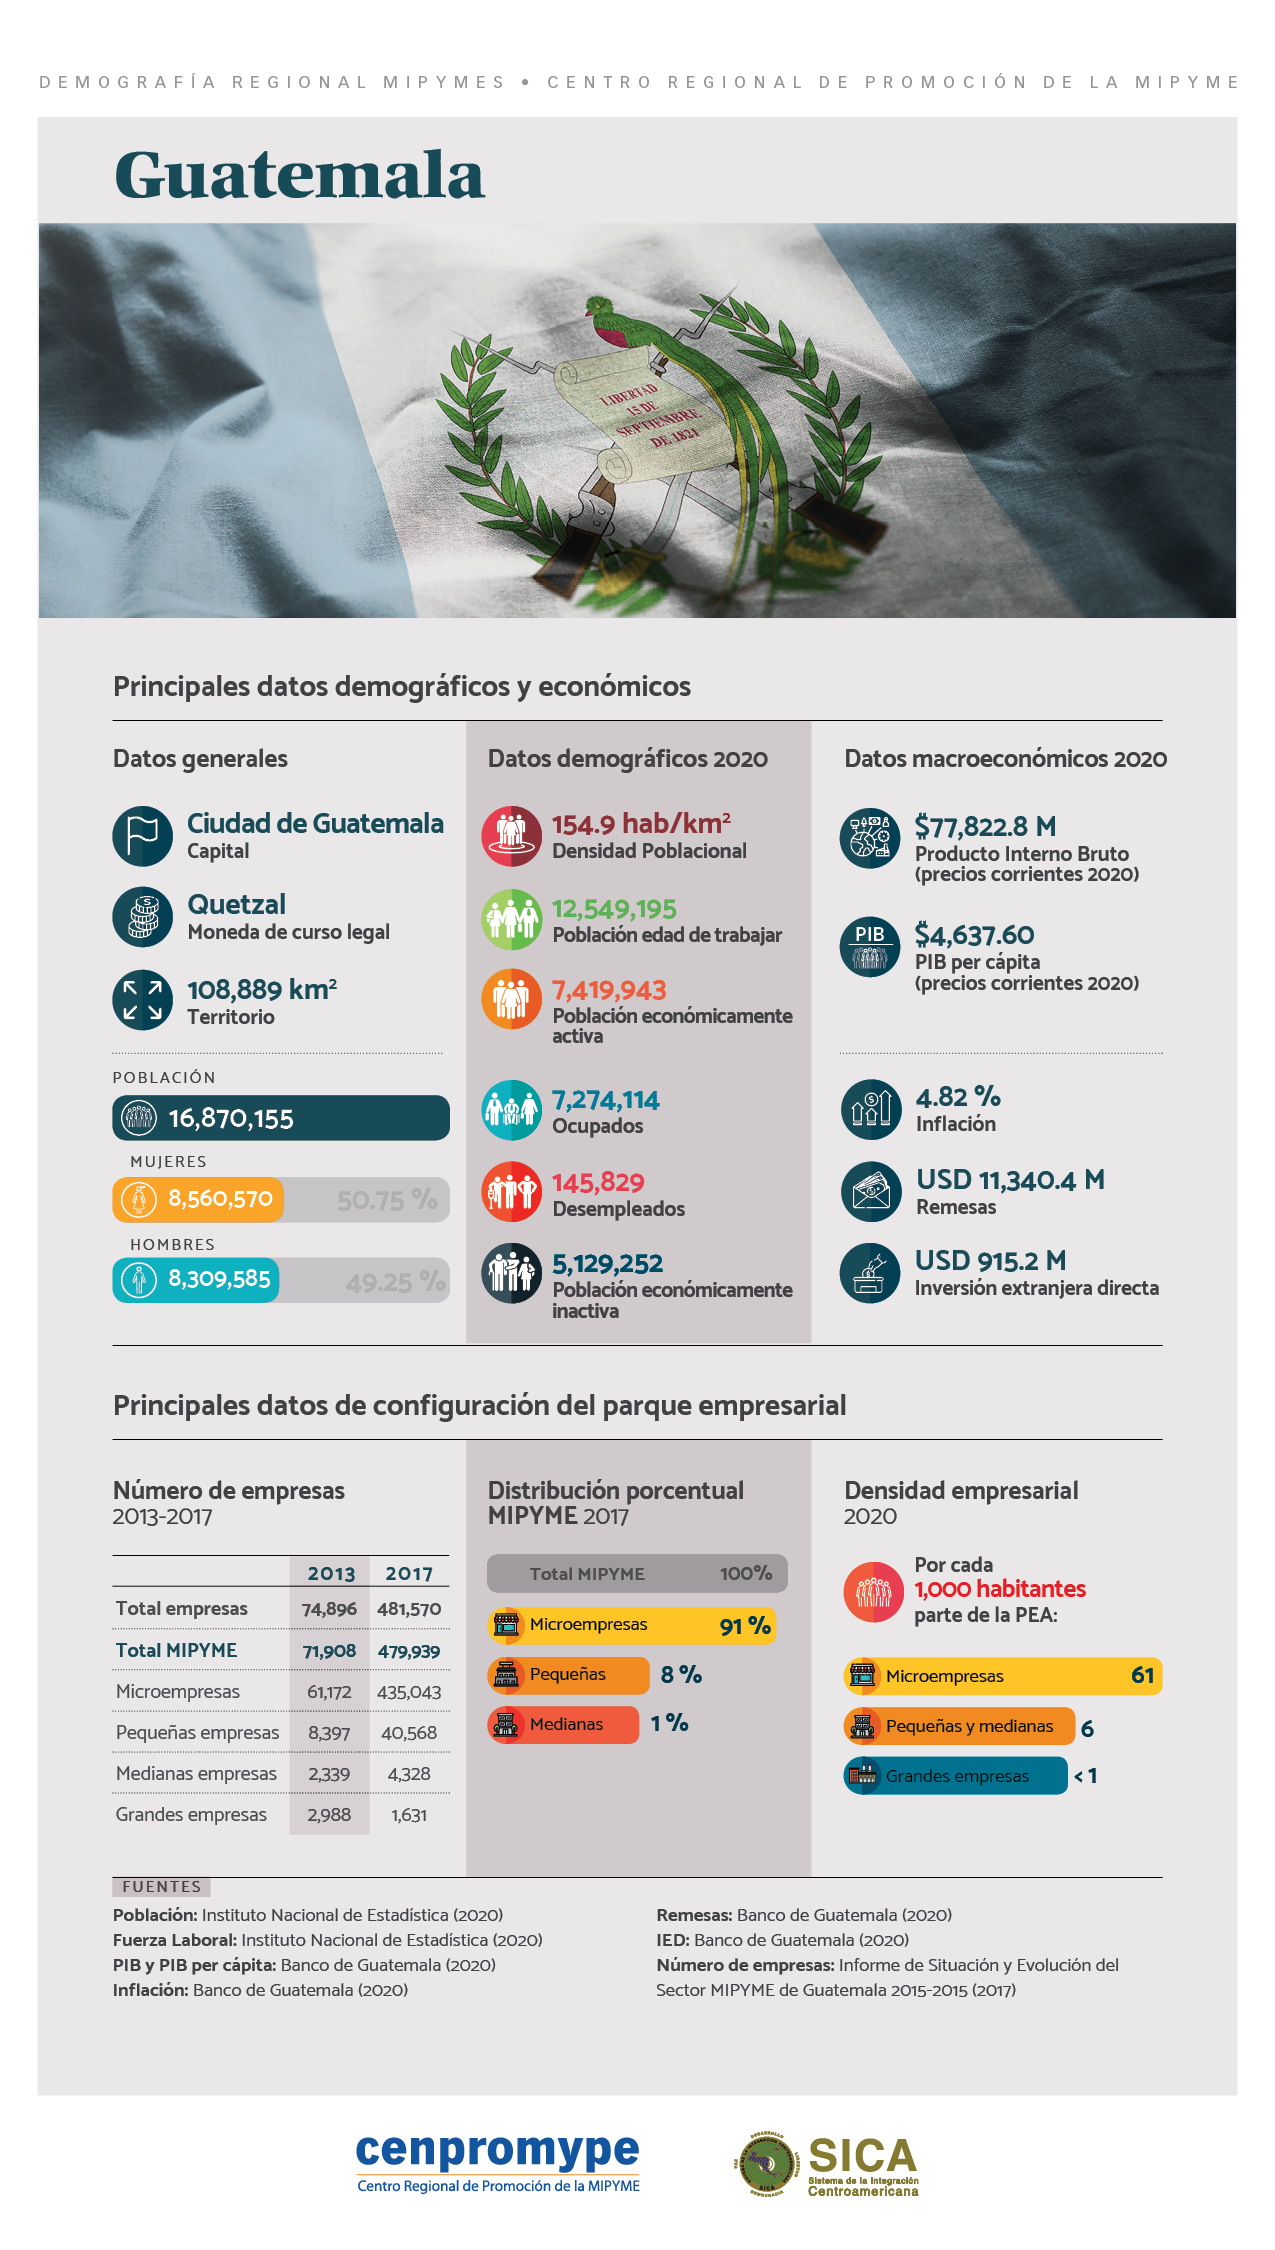 INFOGRAFÍA Principales datos demográficos y económicos de Guatemala